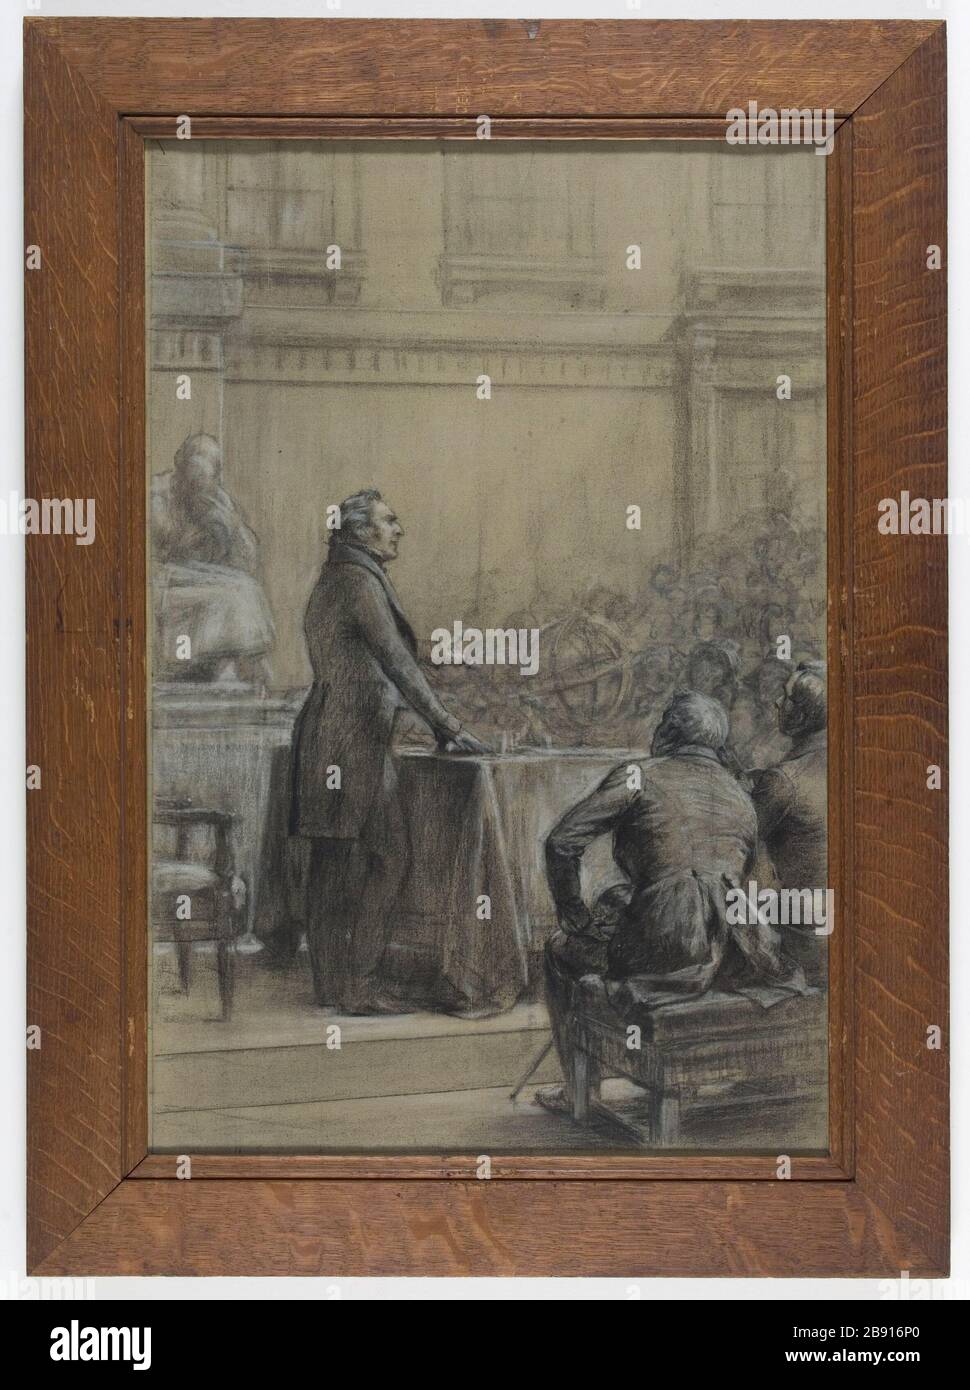 GLIEDERUNG FÜR DEKORATION SORBONNE Theobald Chartran (1849-1907). "Esquisse pour la décoration de la Sorbonne". Fusain et craie blanche sur toile. Paris, musée Carnavalet. Stockfoto